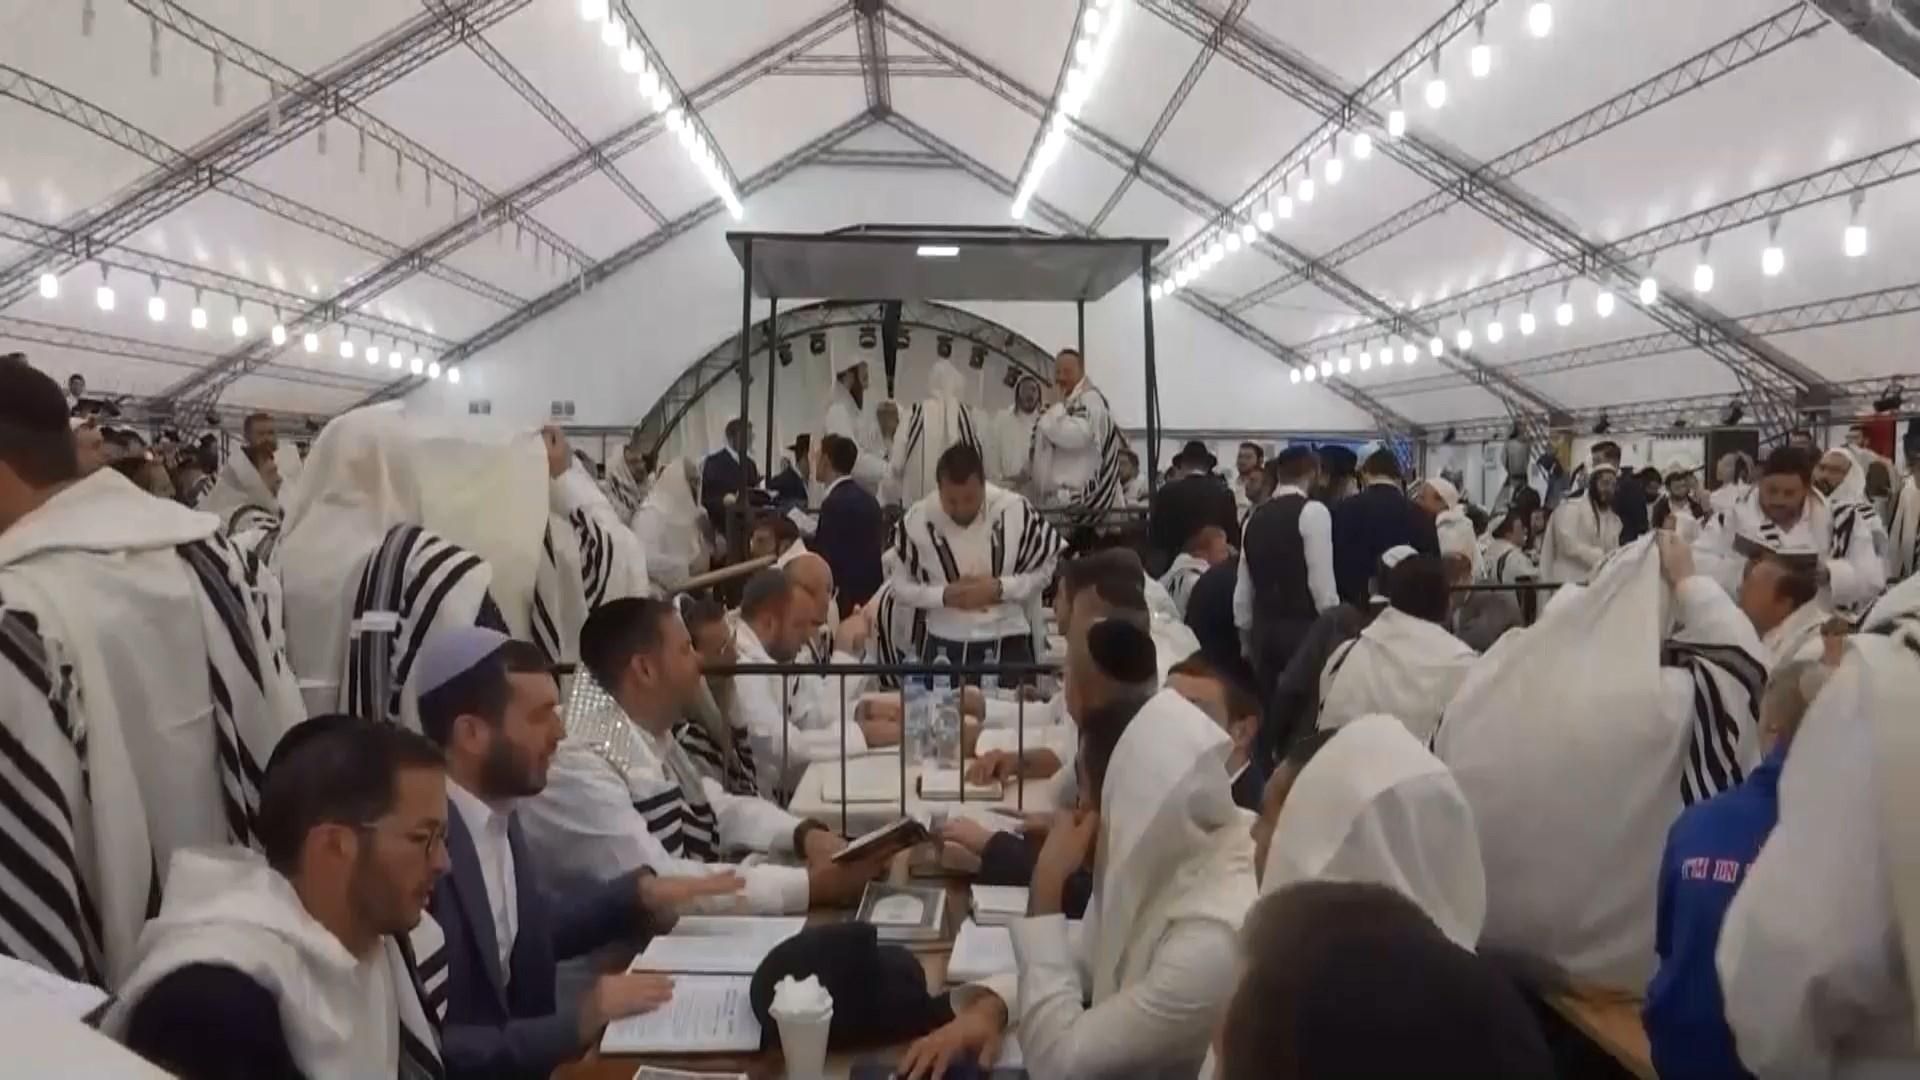 Єврейський Новий рік: як відзначають свято в Україні (фото та відео)